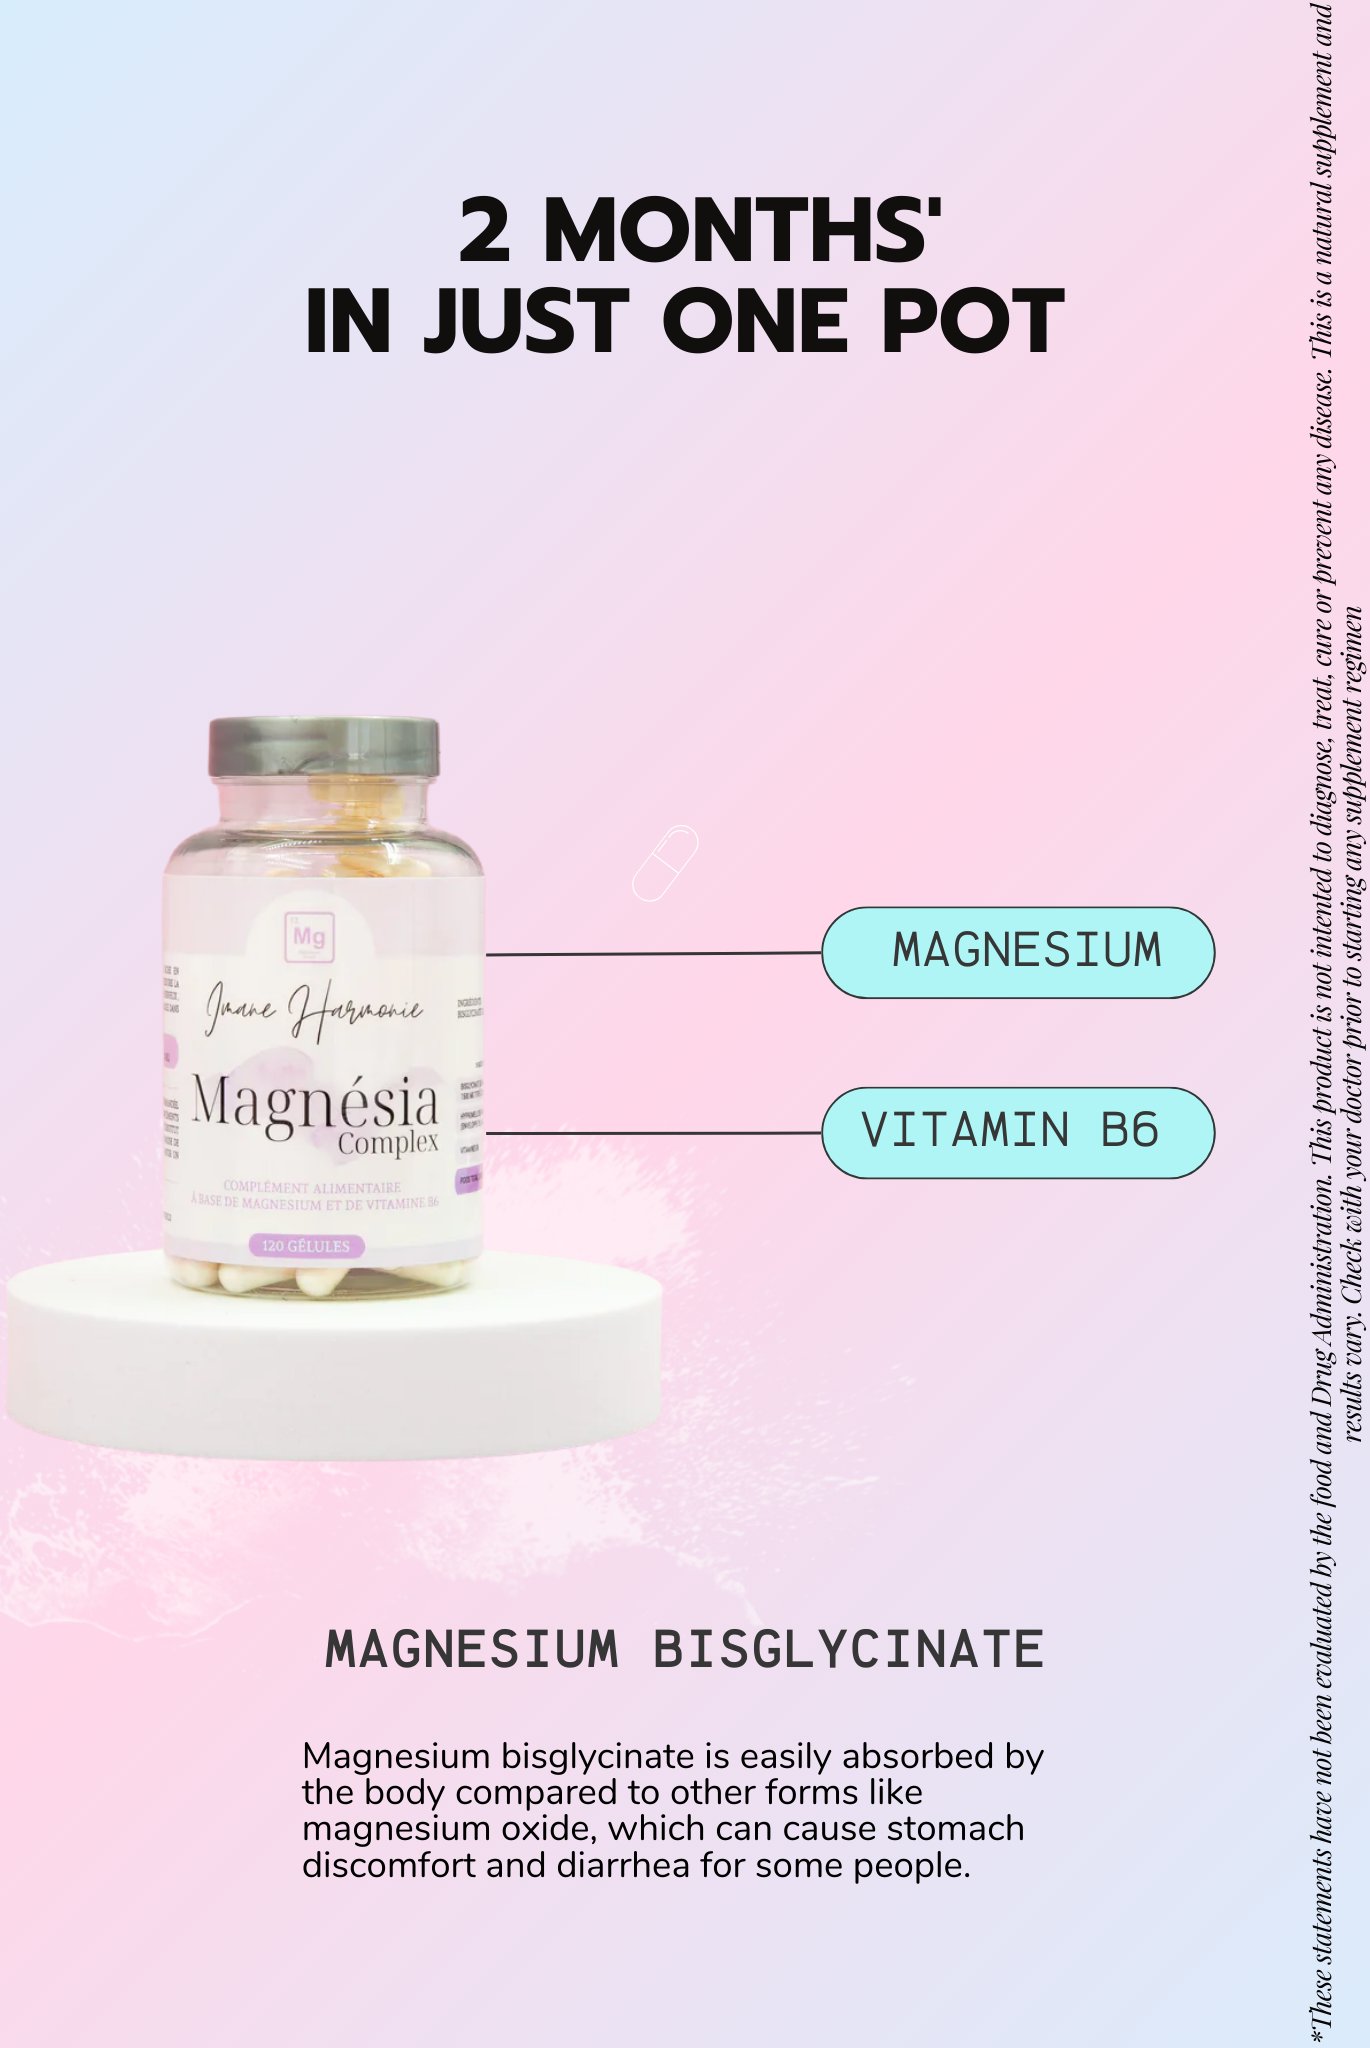 Primary supplements of magnésia complex : Magnesium, Vitamin B6